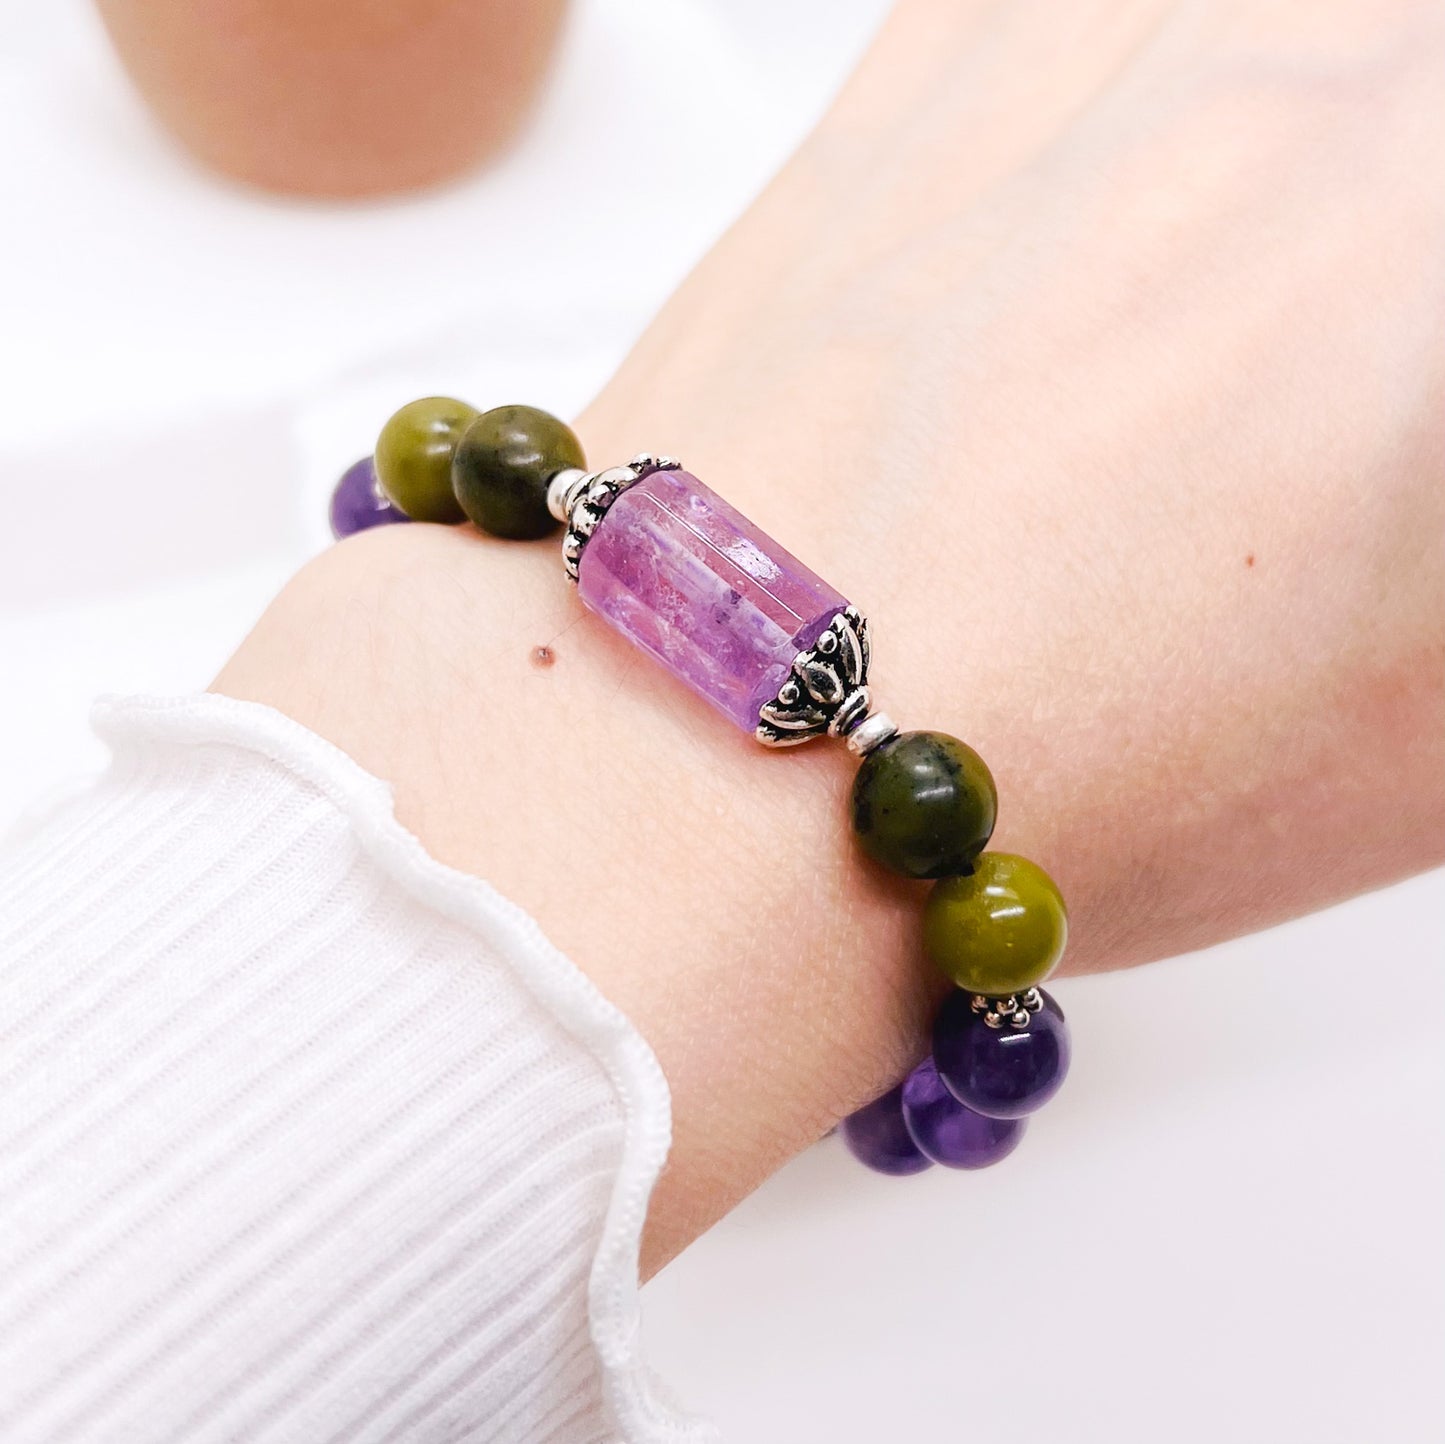 Amethyst and jade lotus mala bracelet